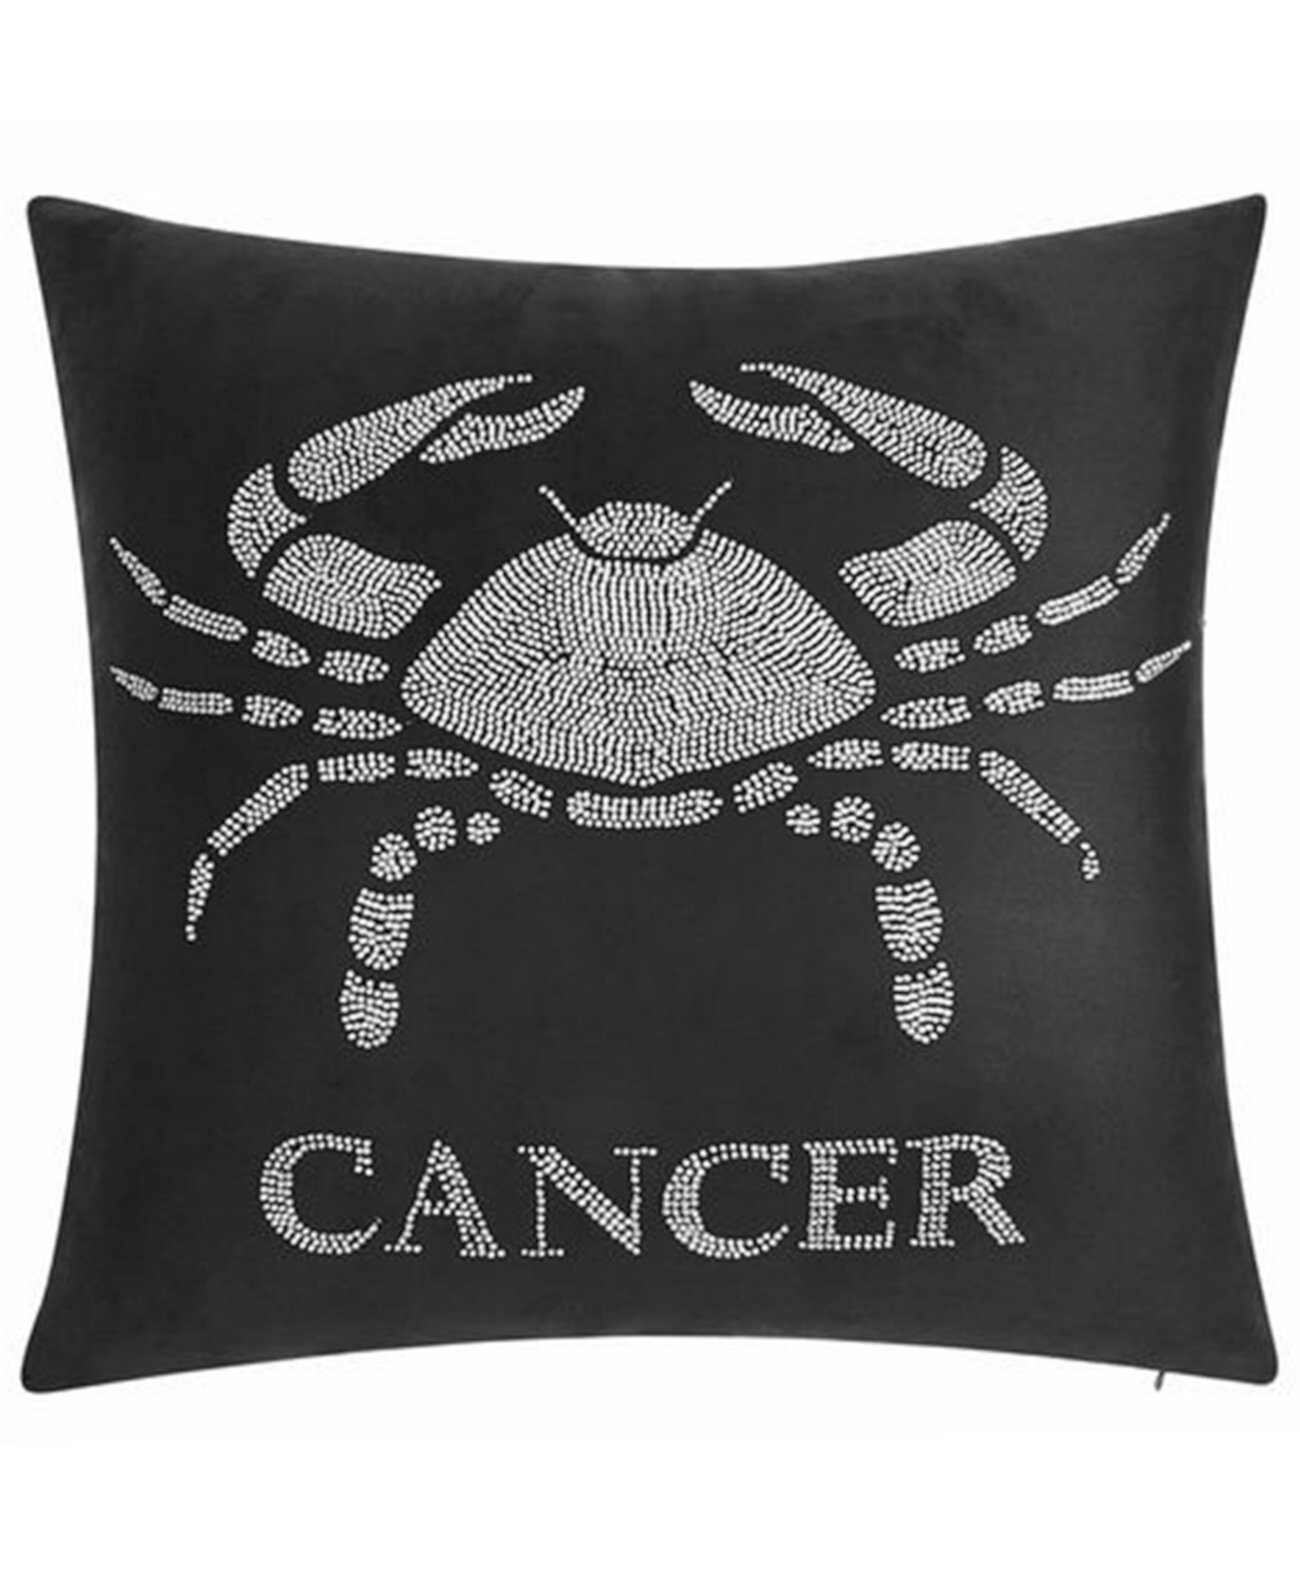 Декоративная подушка «Рак», расшитая бархатом, 18 x 18 дюймов Edie@Home